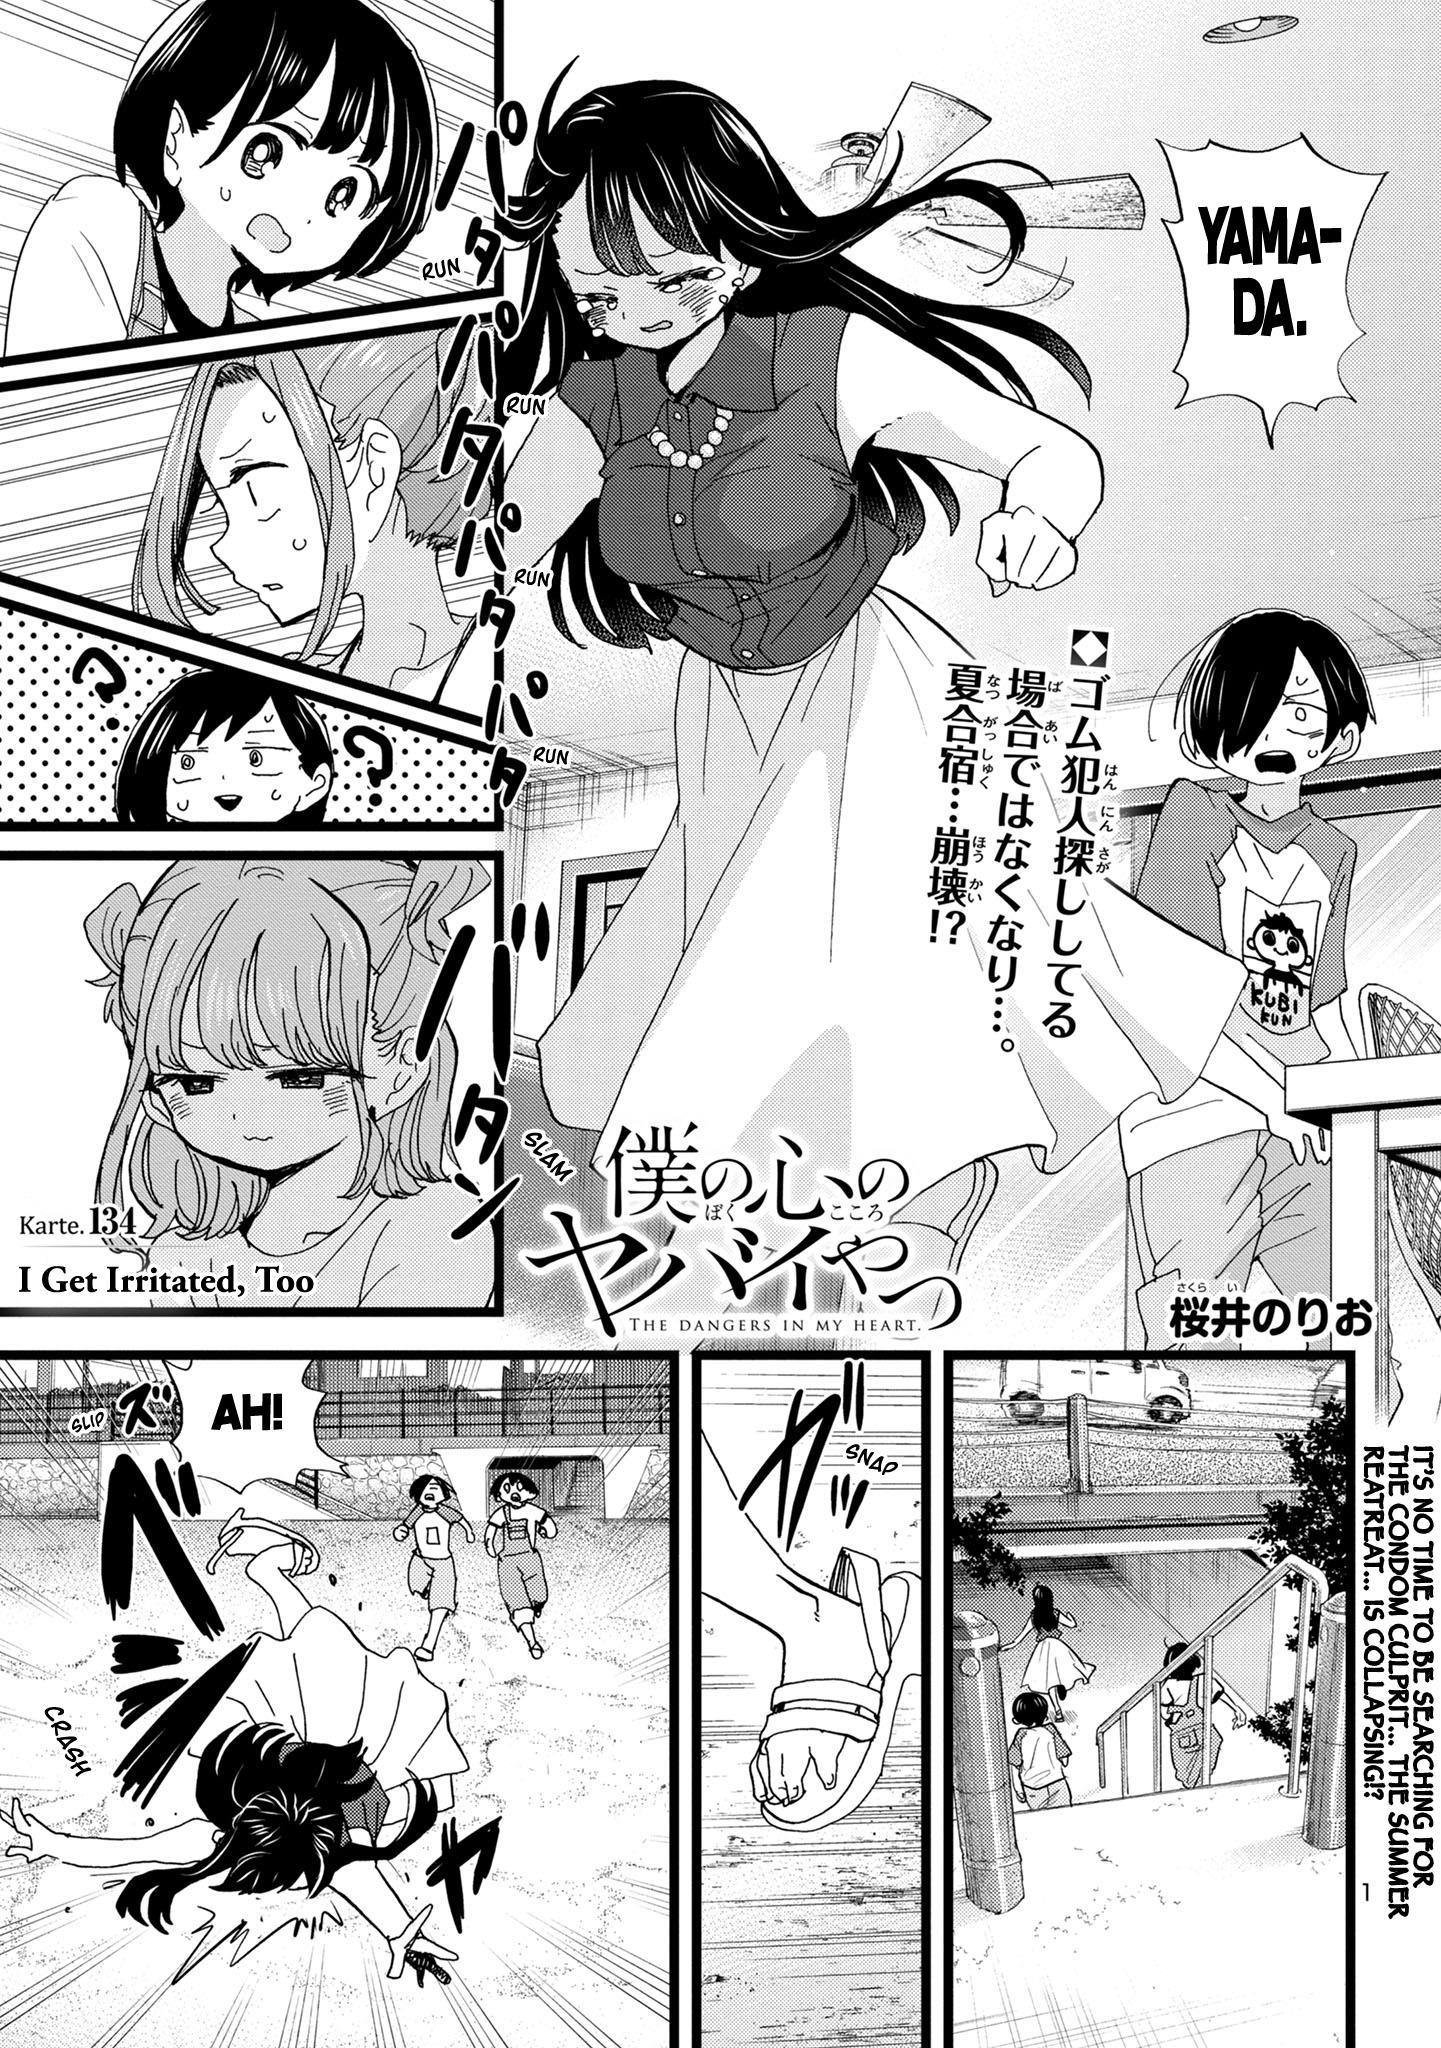 Boku no Kokoro no Yabai Yatsu Ch.83.1 Page 1 - Mangago